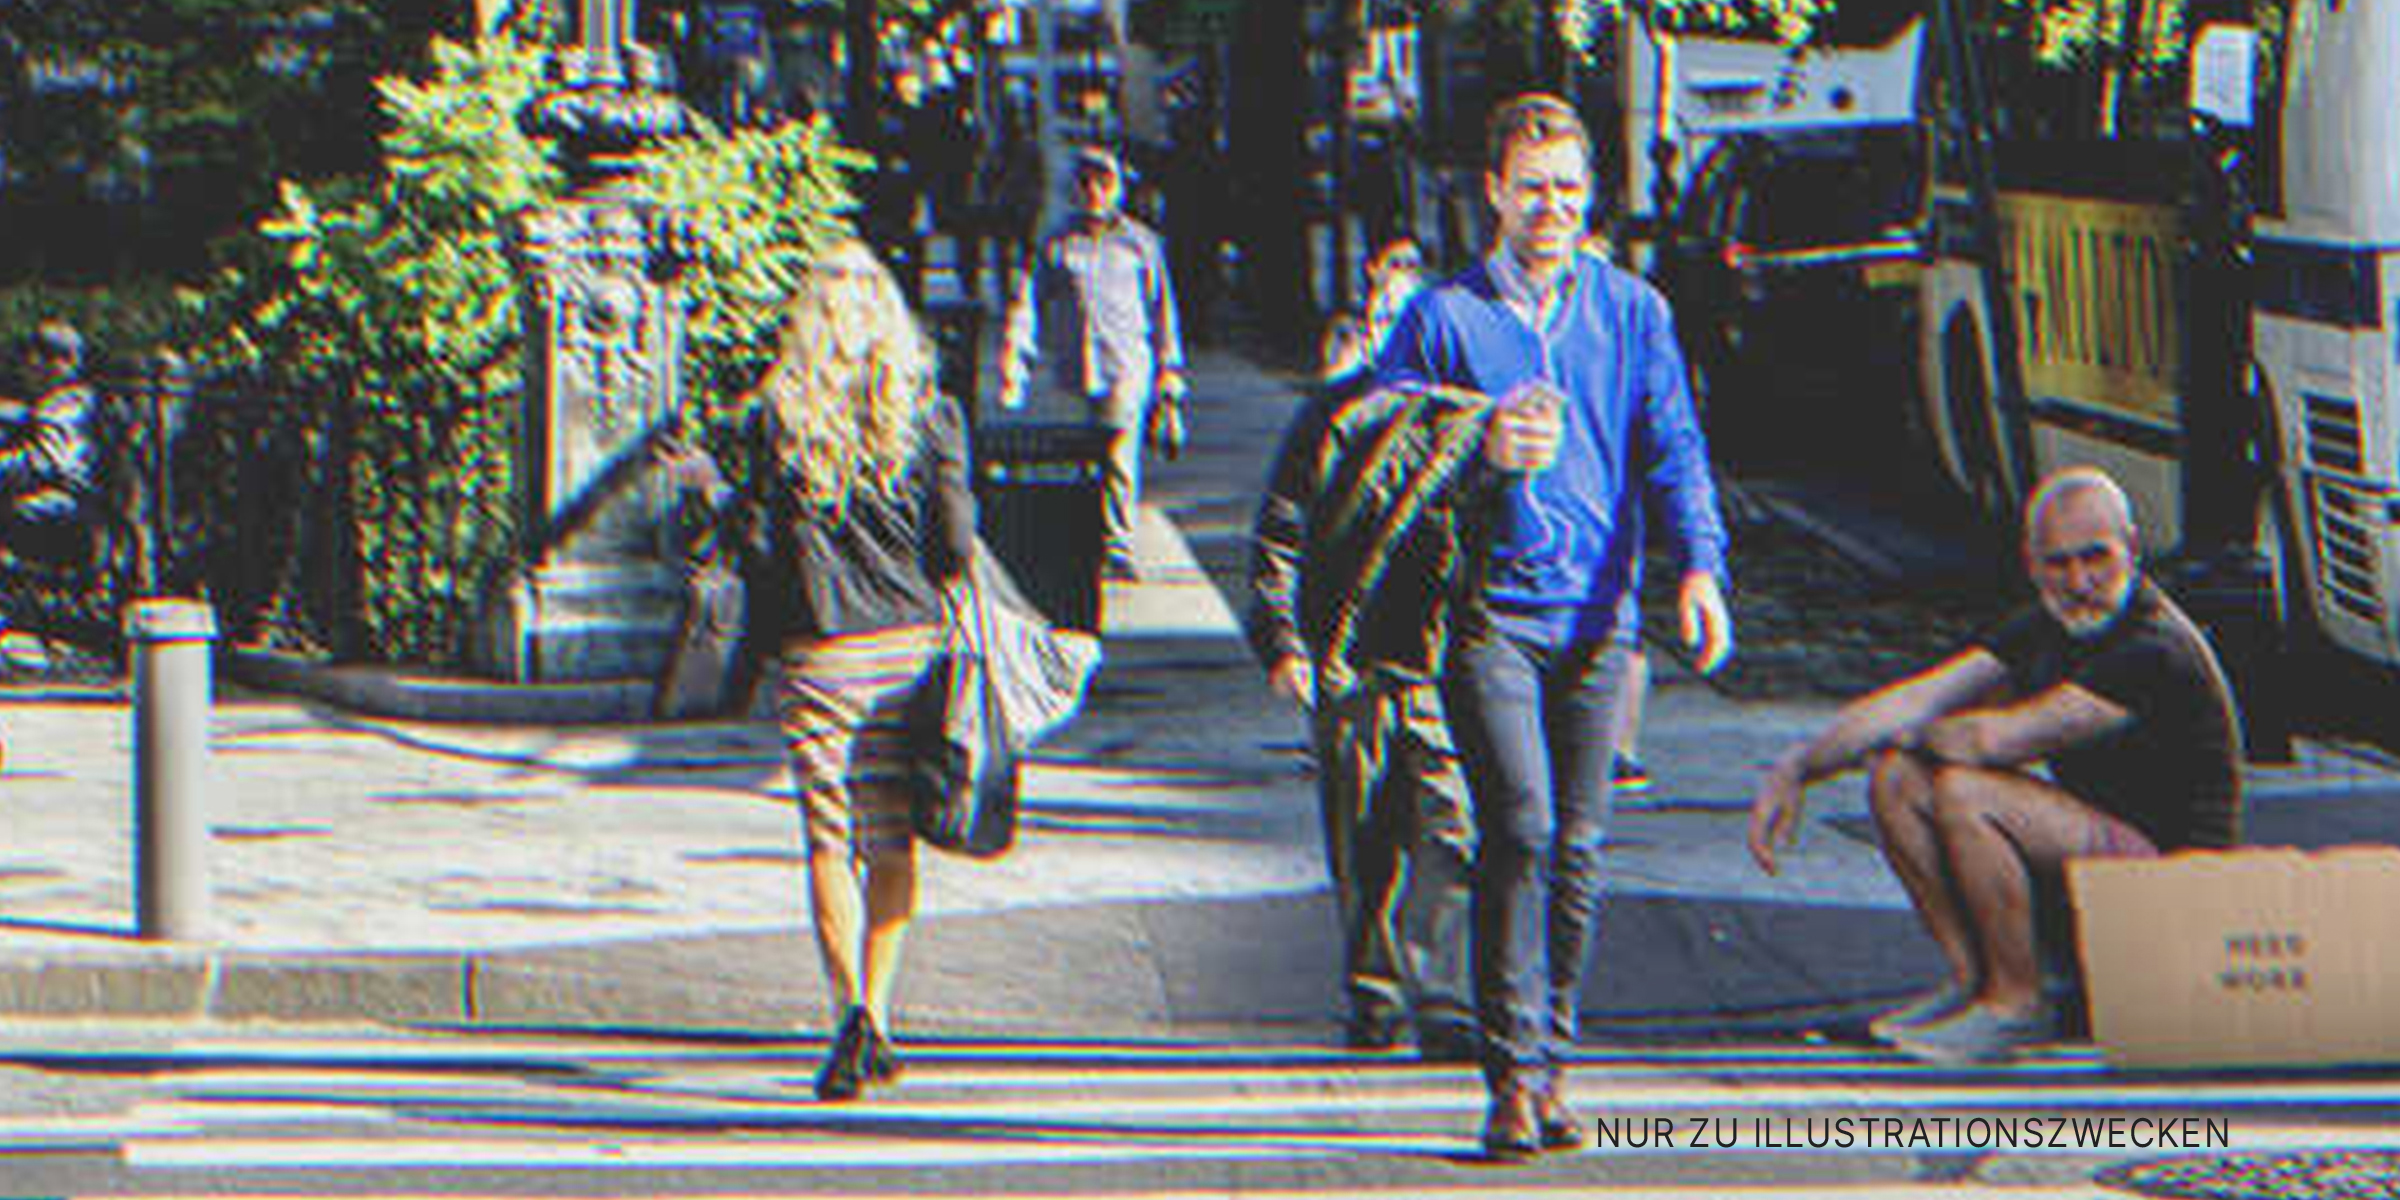 Menschen auf der Straße. | Quelle: Shutterstock